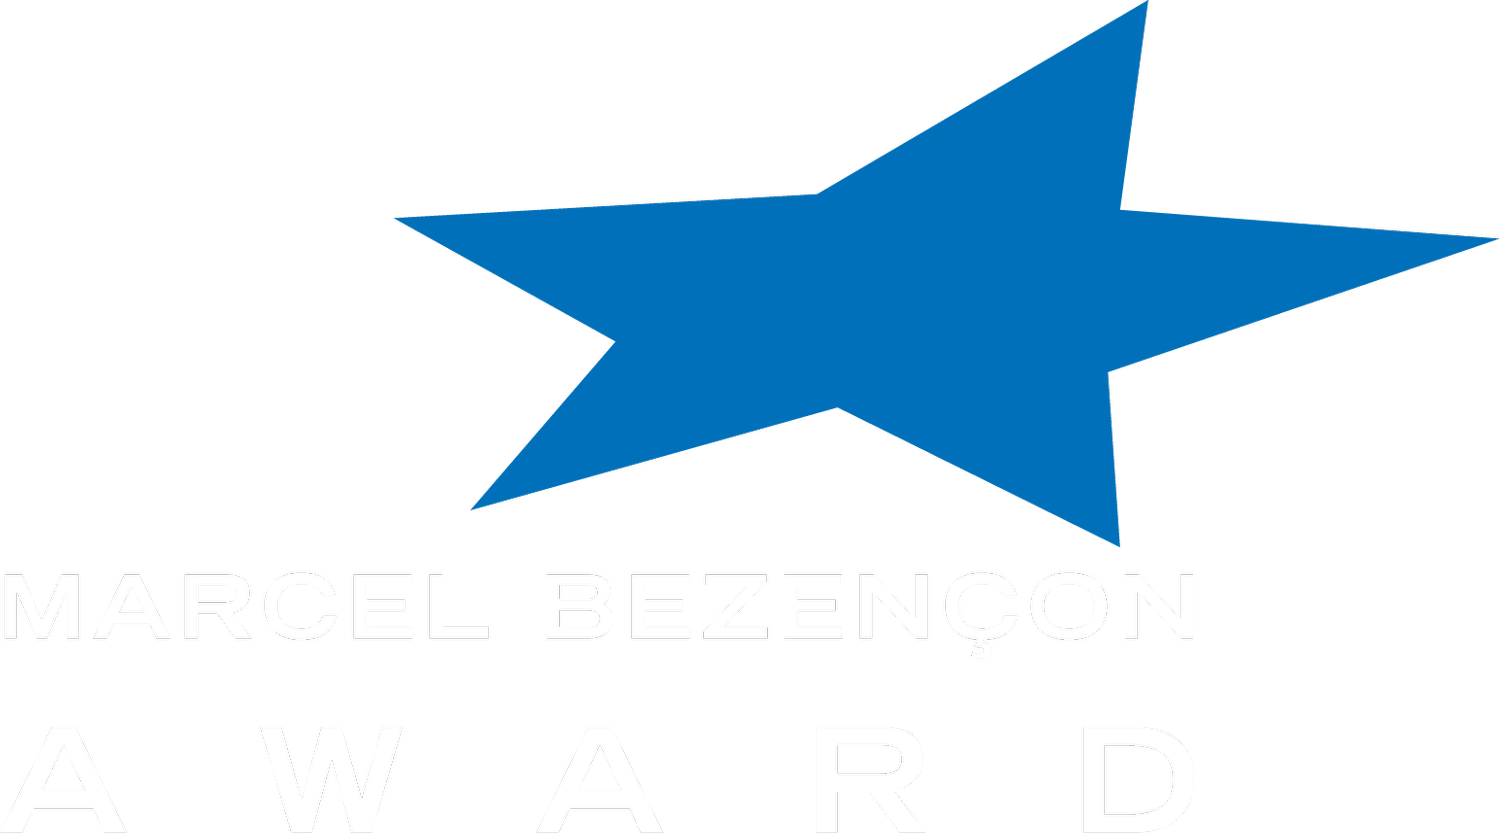 Marcel Bezençon Award